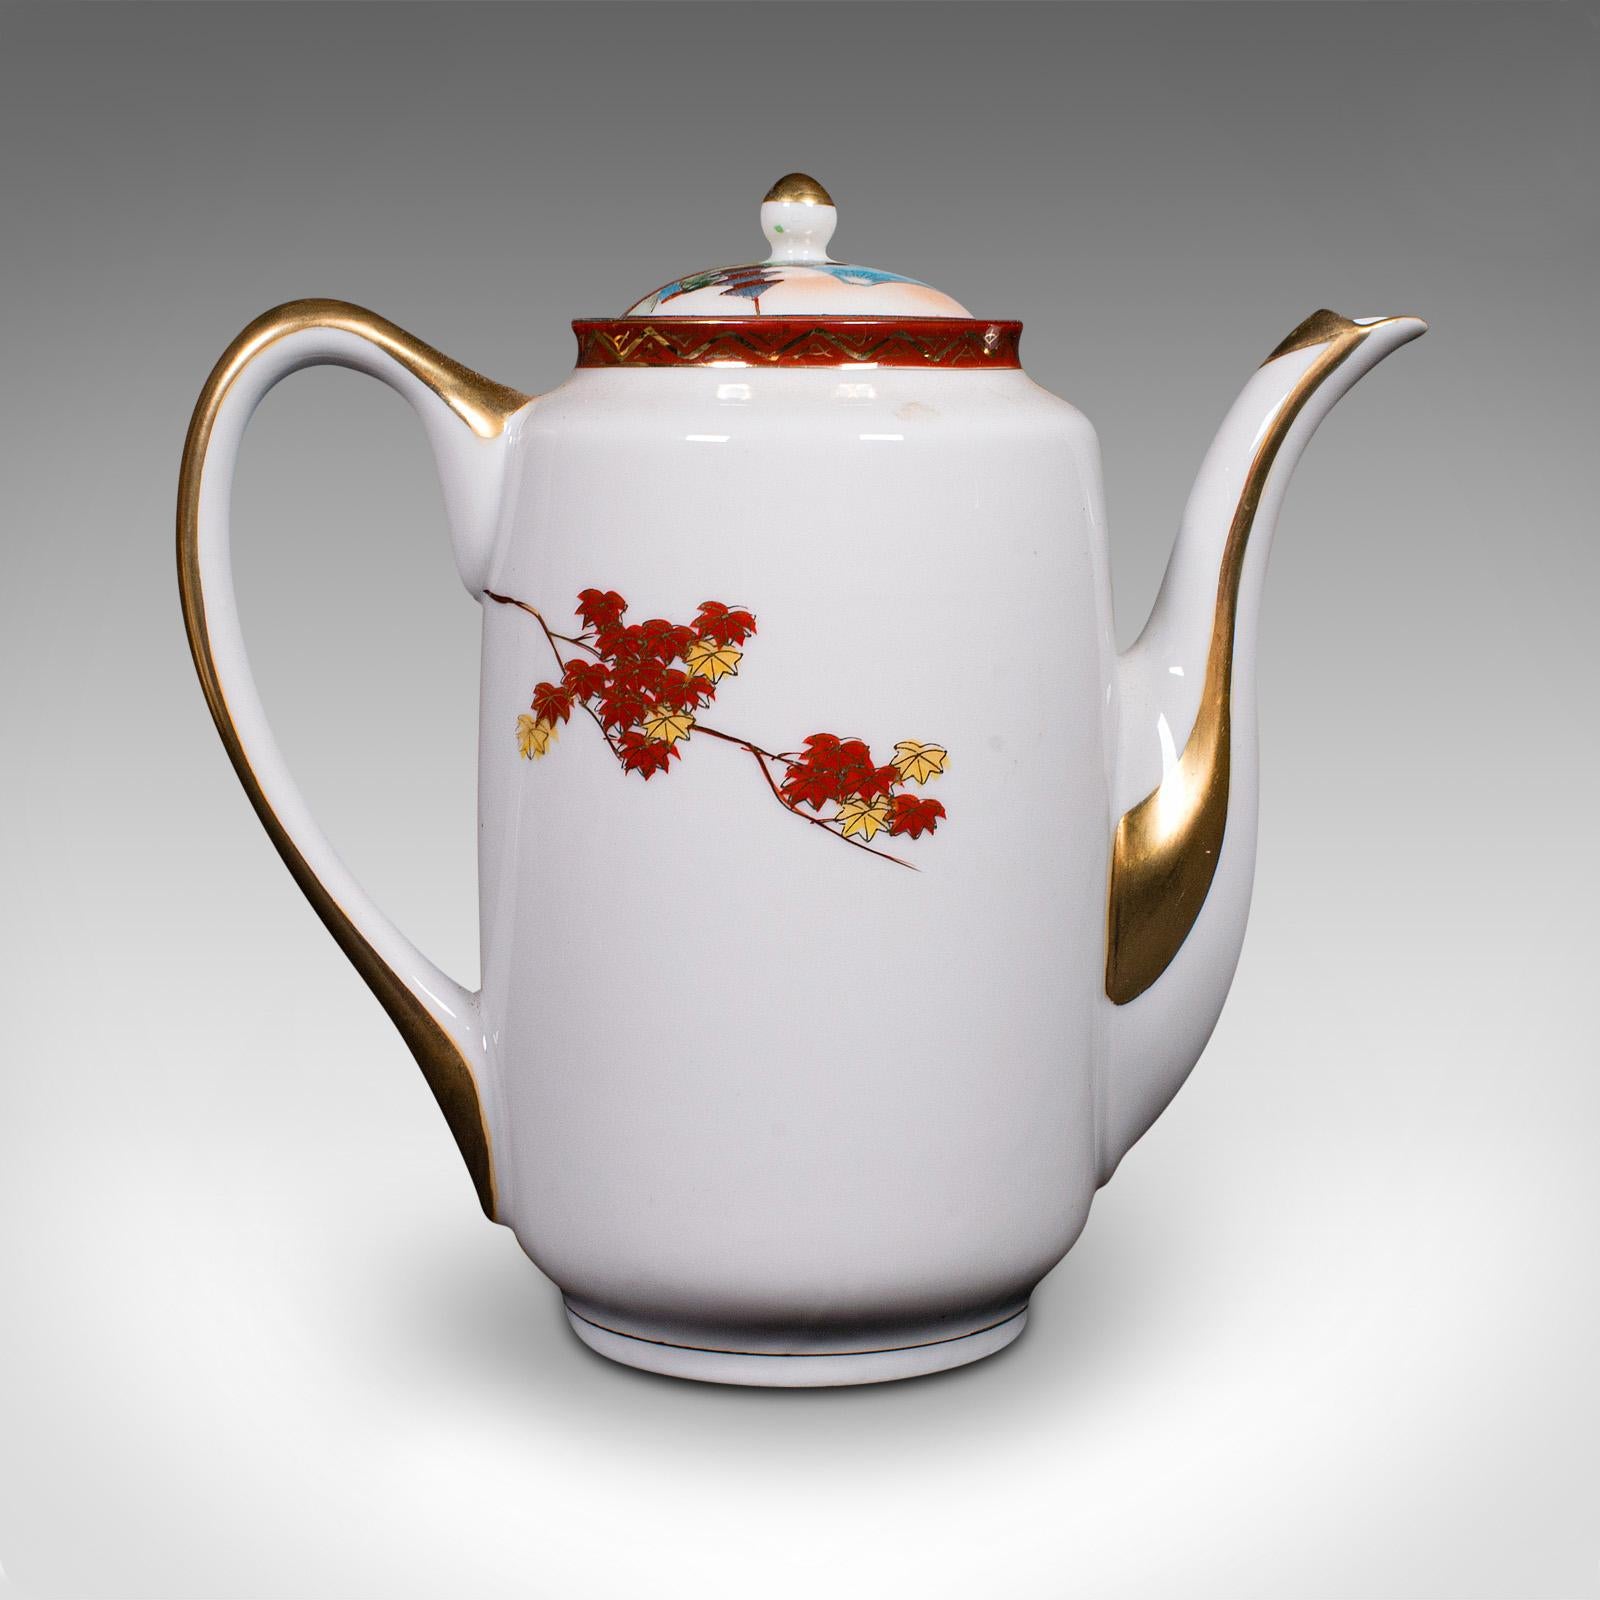 Vintage 4-person Tea Set, Japanese, Ceramic, Teapot, Cups, After Arita, Art Deco For Sale 1